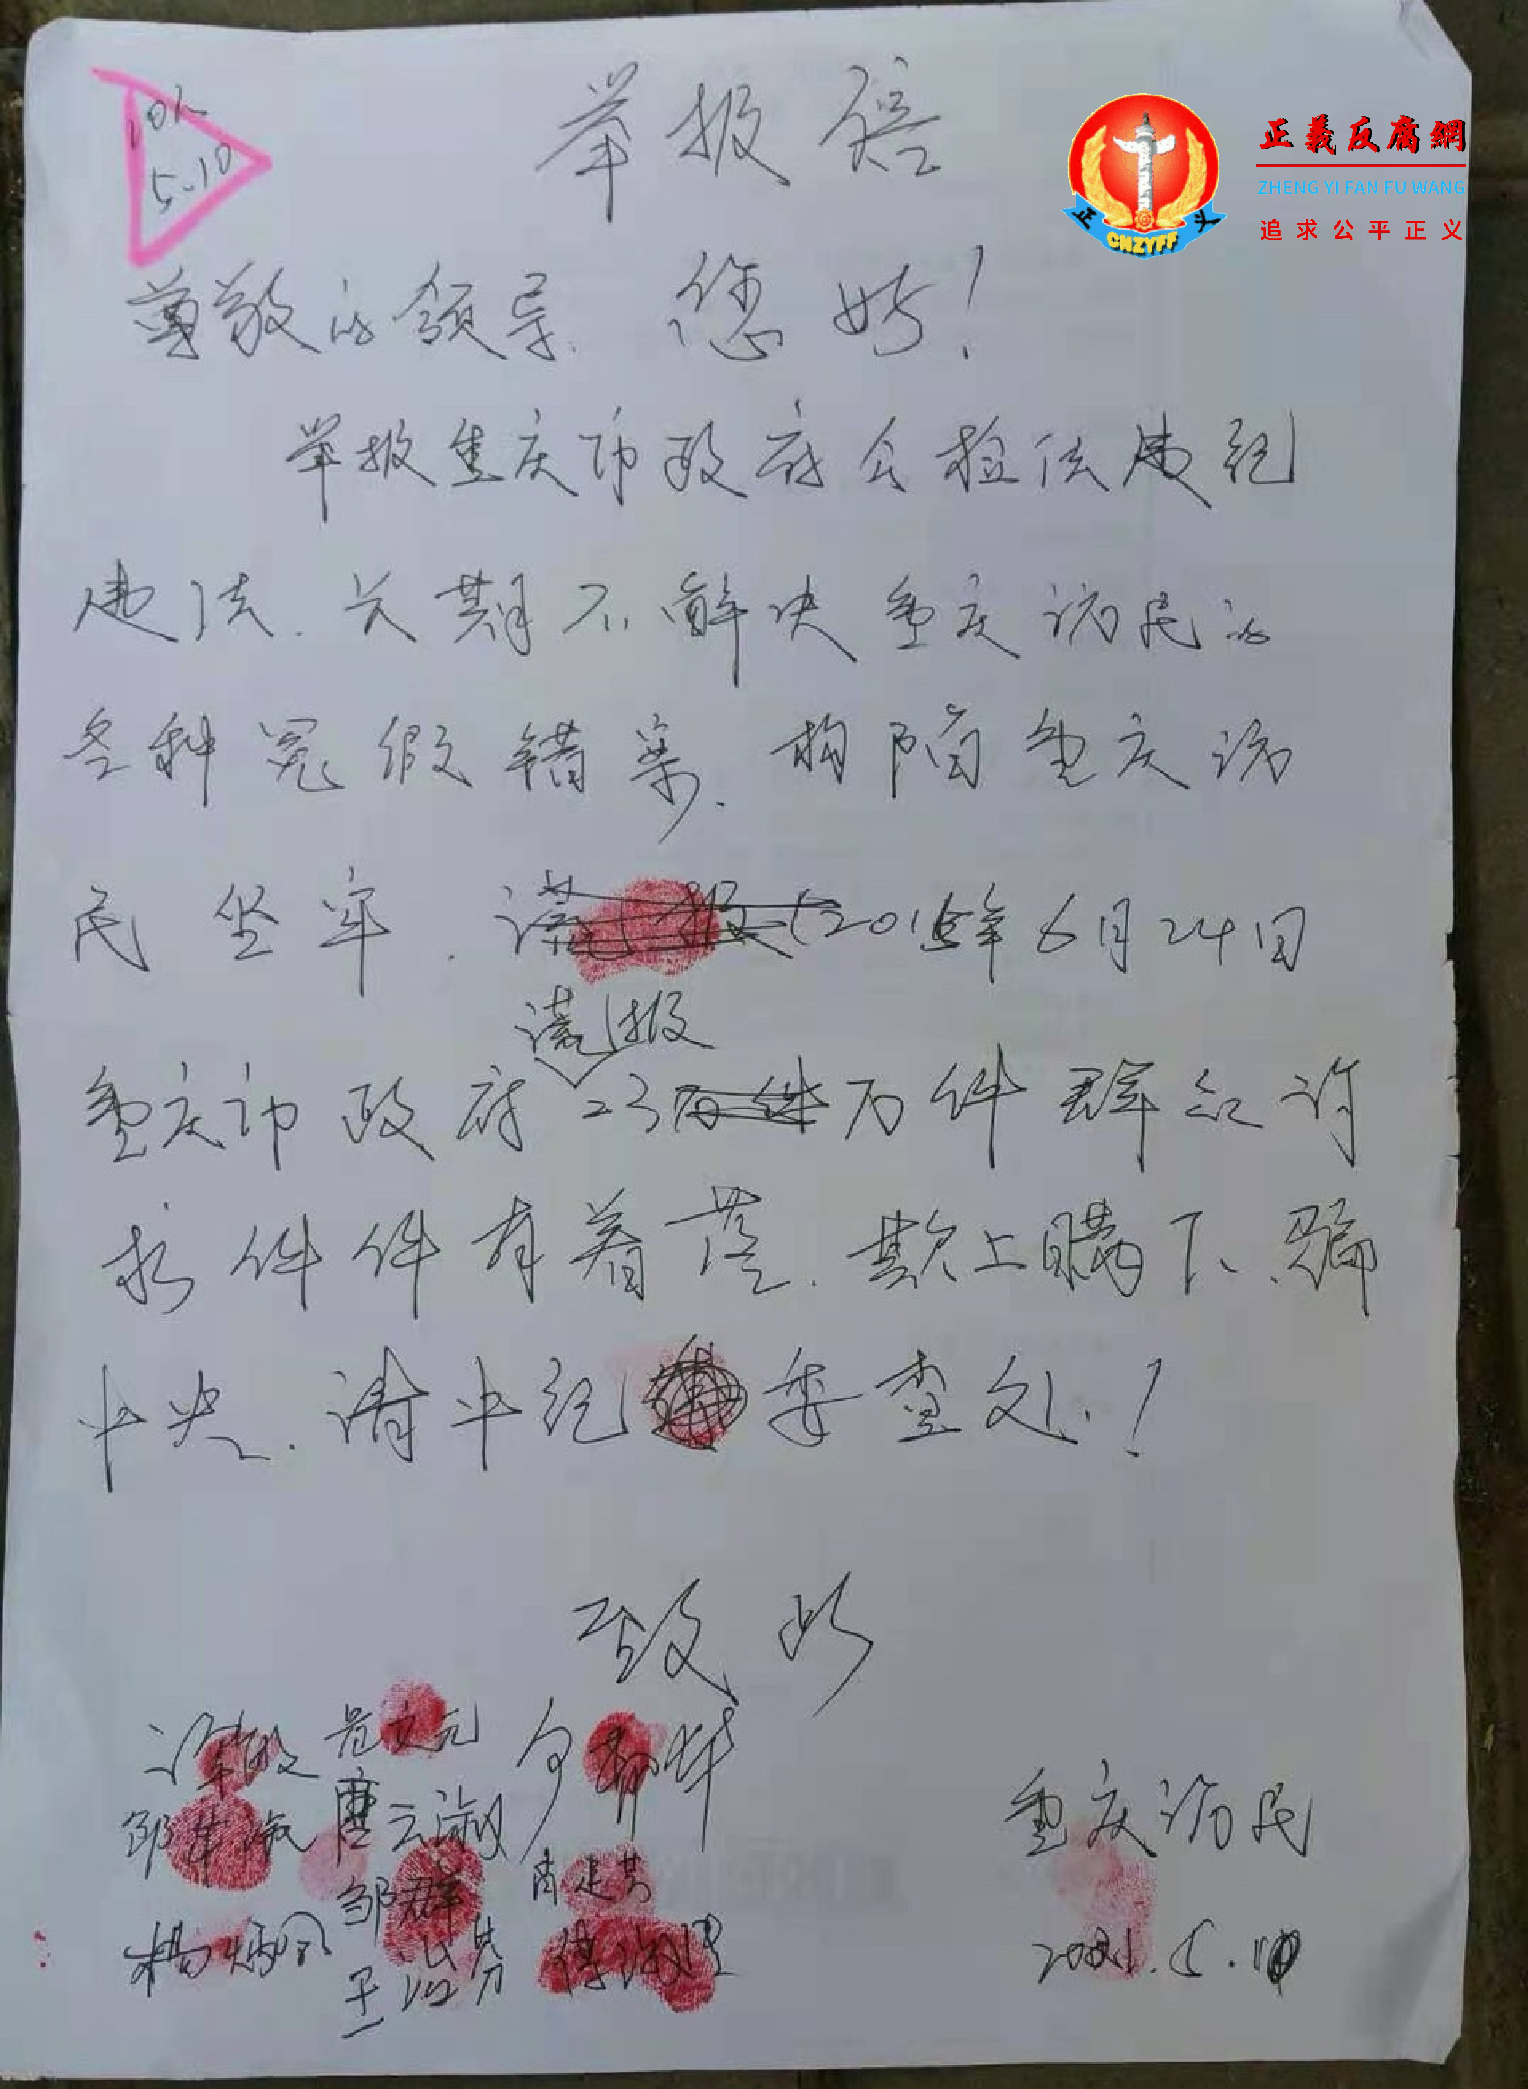 重庆访民举报信。.png